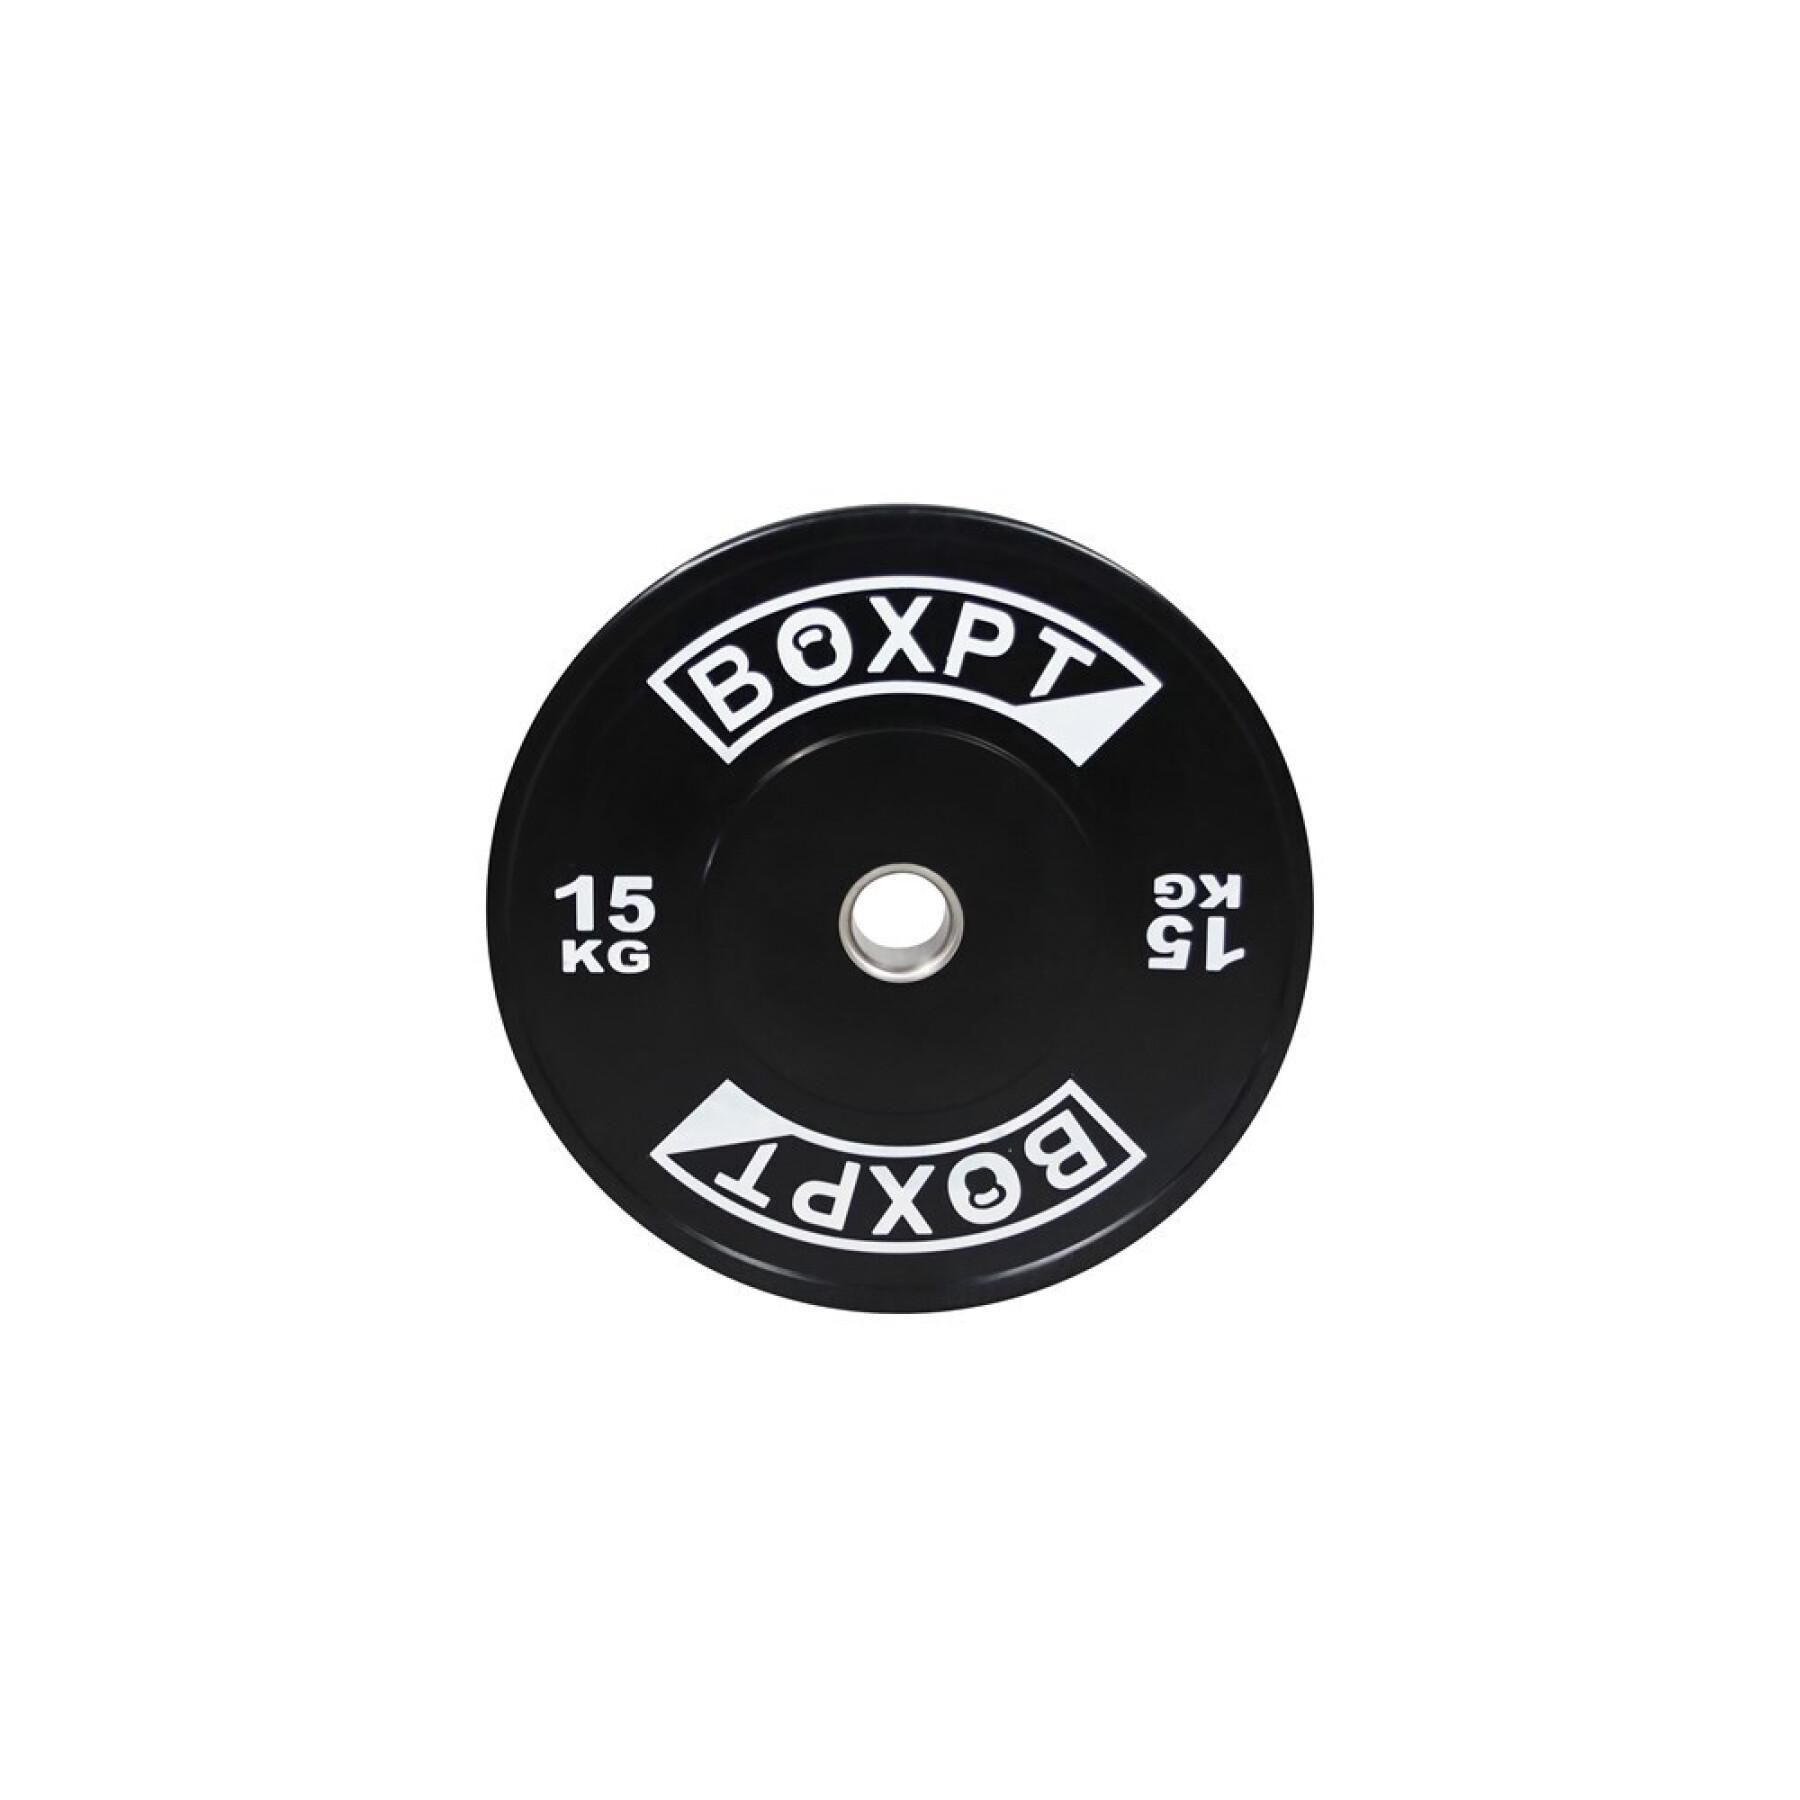 Bodybuilding schijf Boxpt 2.0 - 15 kg